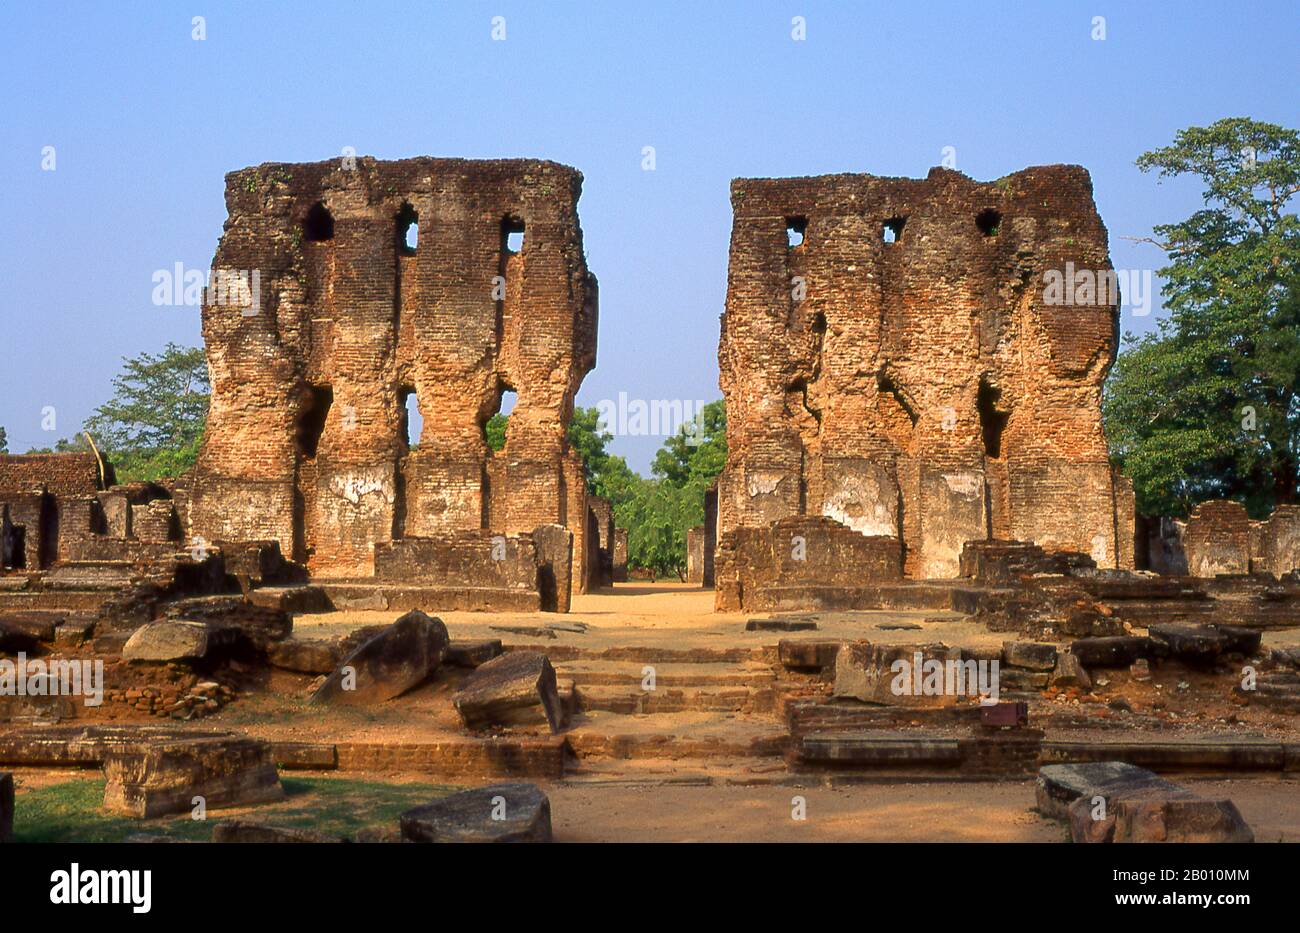 Sri Lanka: Palazzo reale, Polonnaruwa. Il Palazzo reale fu costruito dal Re Parakramabahu il Grande (1123 - 1186). Polonnaruwa, il secondo più antico dei regni dello Sri Lanka, fu dichiarato per la prima volta capitale dal re Vijayabahu i, che sconfisse gli invasori Chola nel 1070 d.C. per riunire il paese sotto un leader nazionale. Foto Stock